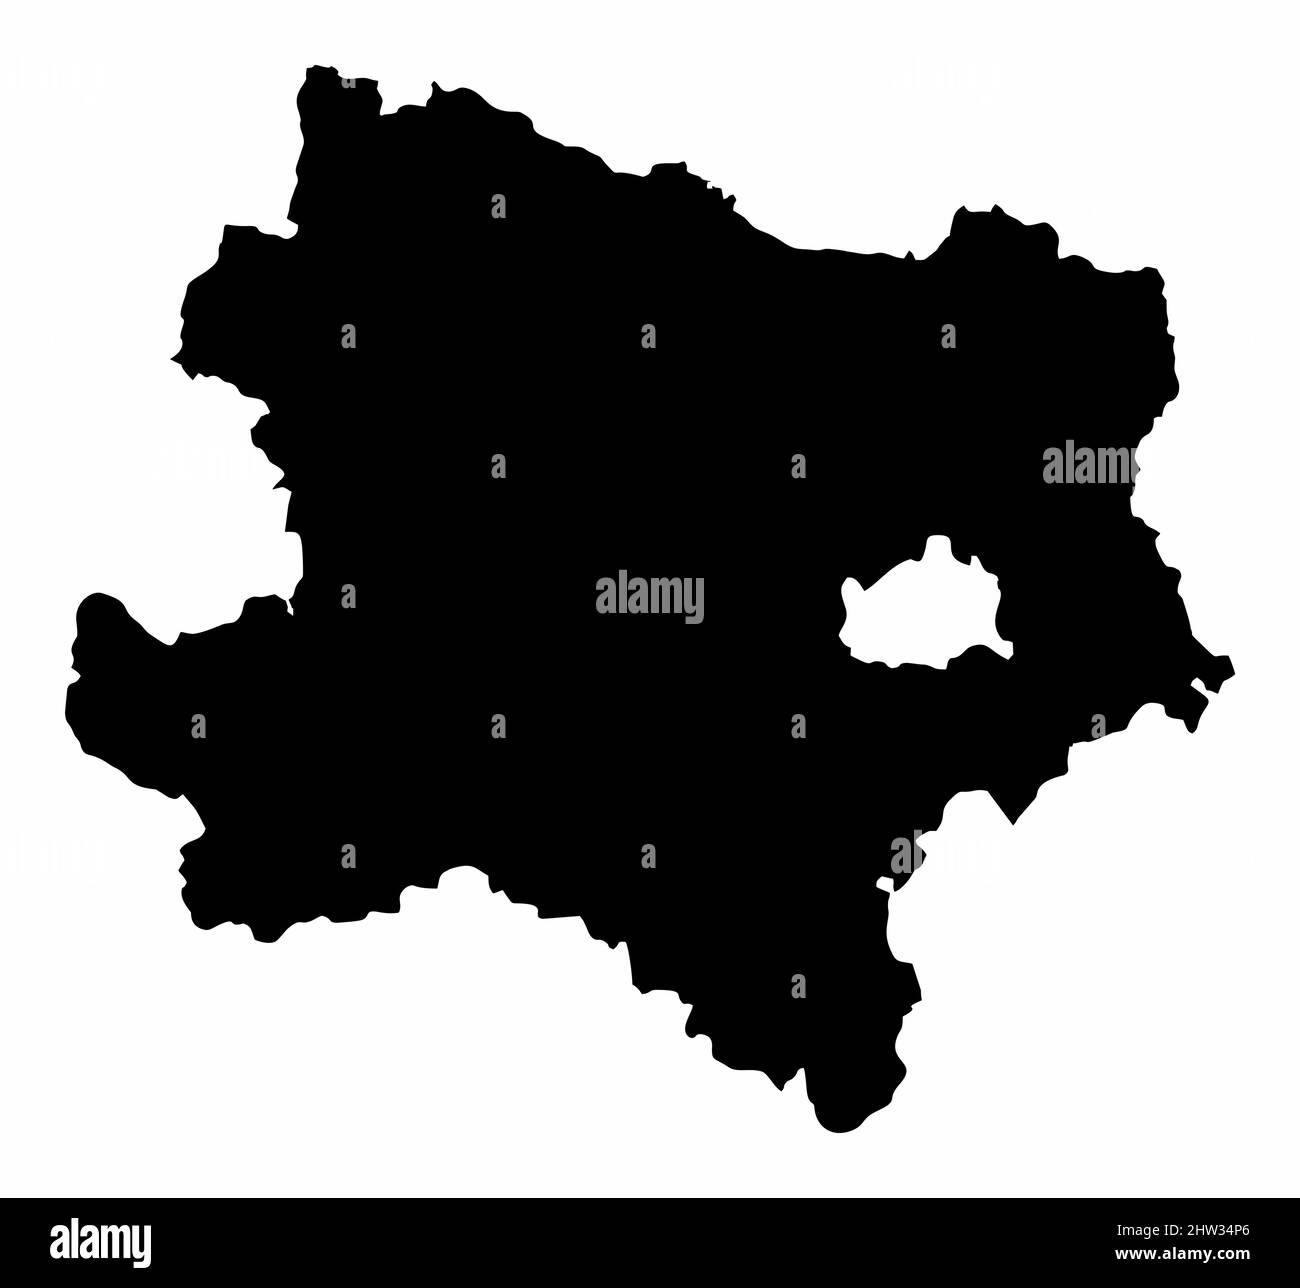 Niederösterreich Staat, Silhouette Karte isoliert auf weißem Hintergrund, Österreich Stock Vektor